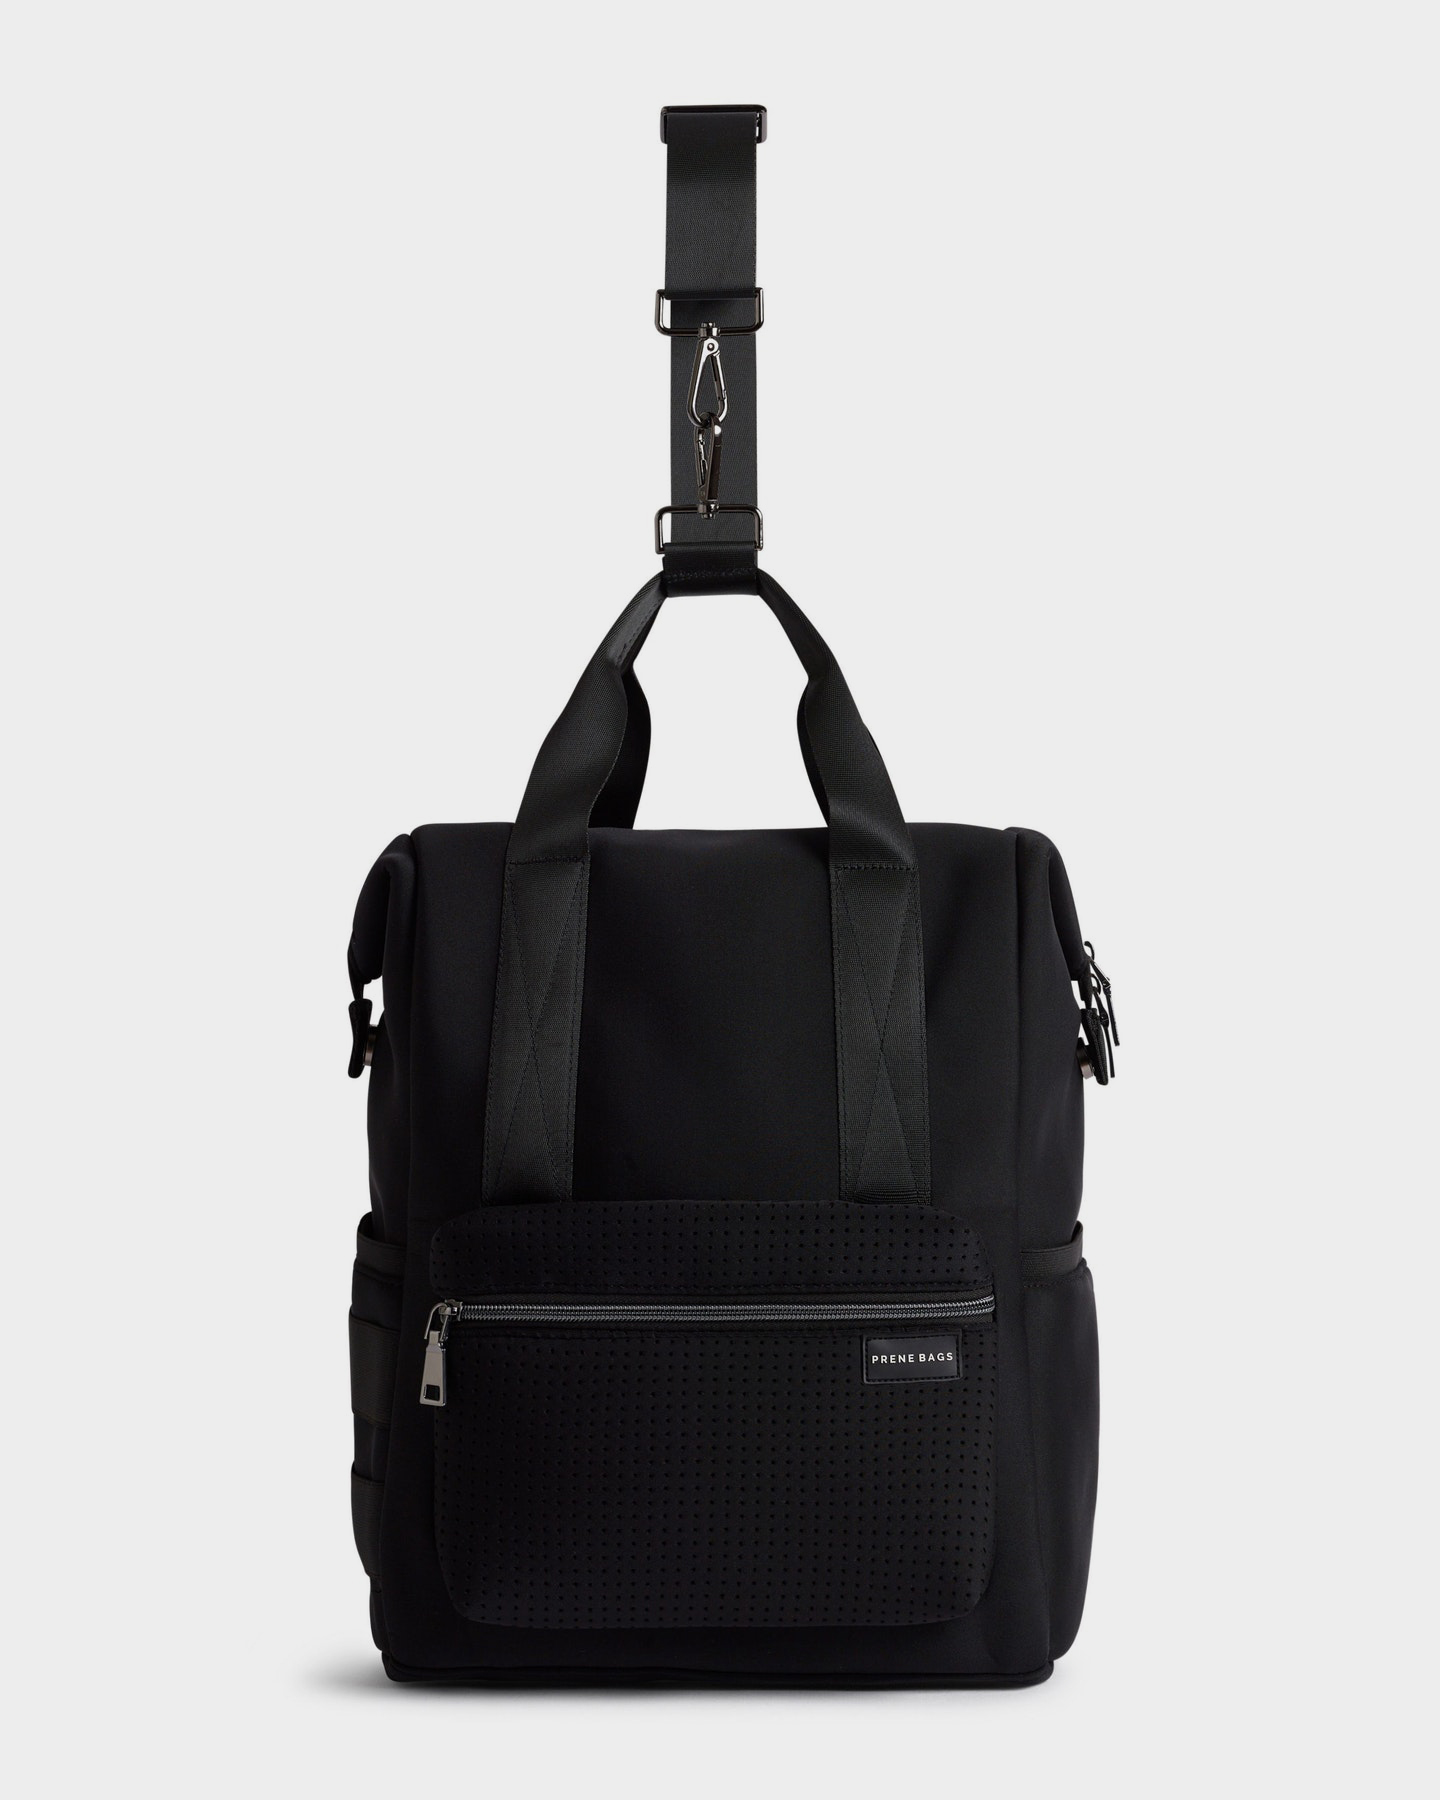 Prene Bags The Haven Backpack Neoprene Bag - Black | SurfStitch